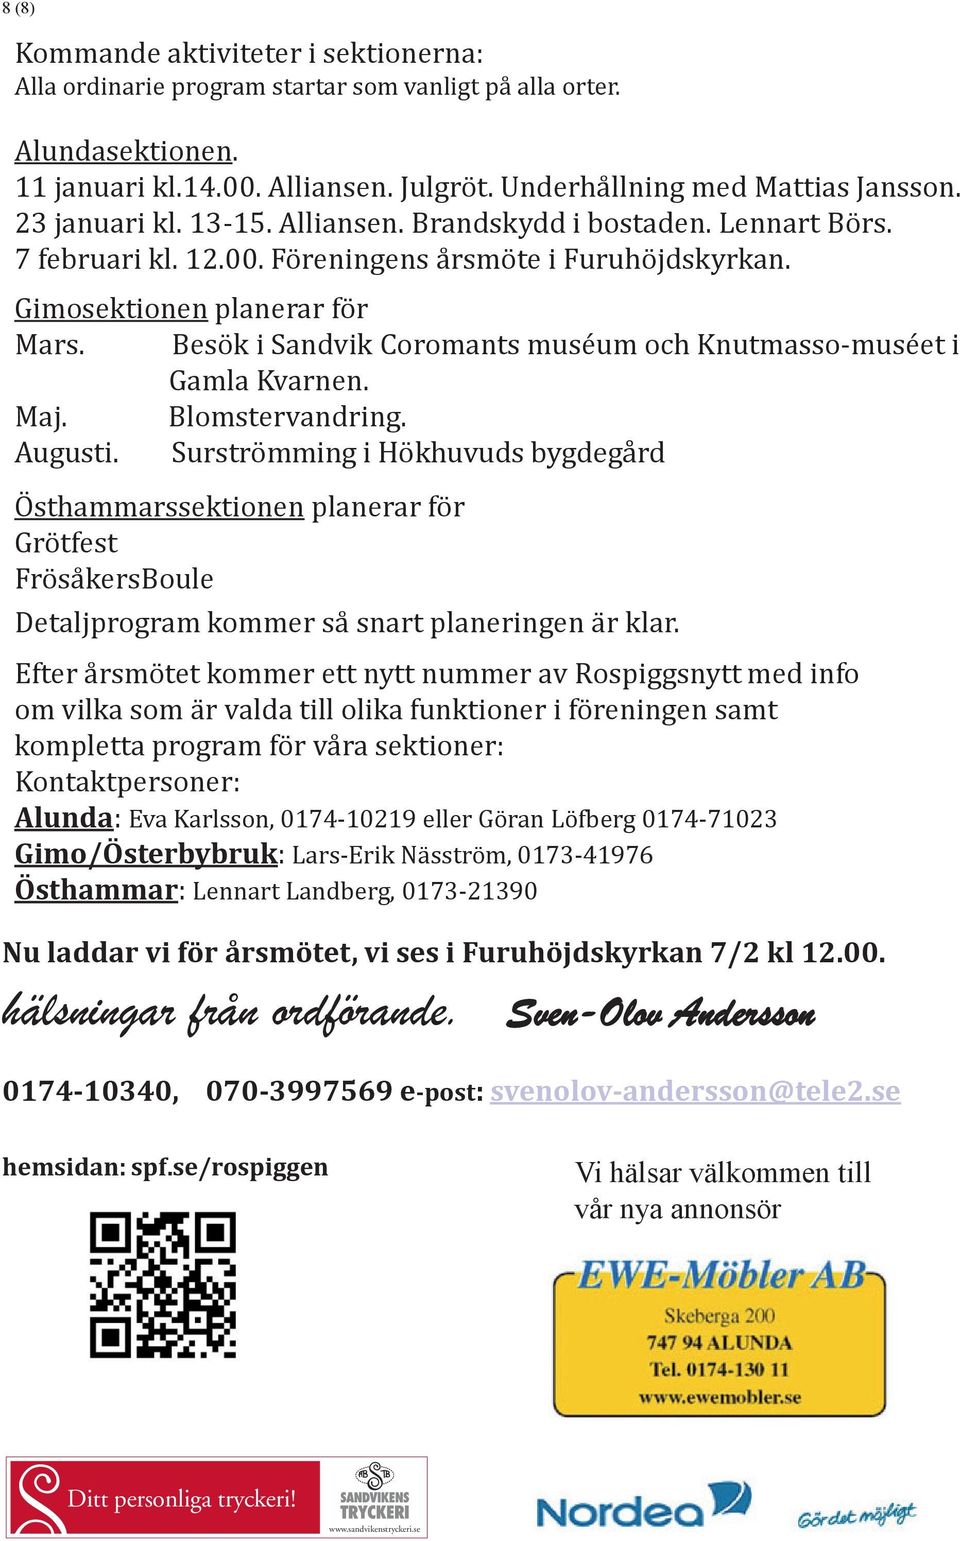 Besök i Sandvik Coromants muséum och Knutmasso-muséet i Gamla Kvarnen. Maj. Blomstervandring. Augusti.